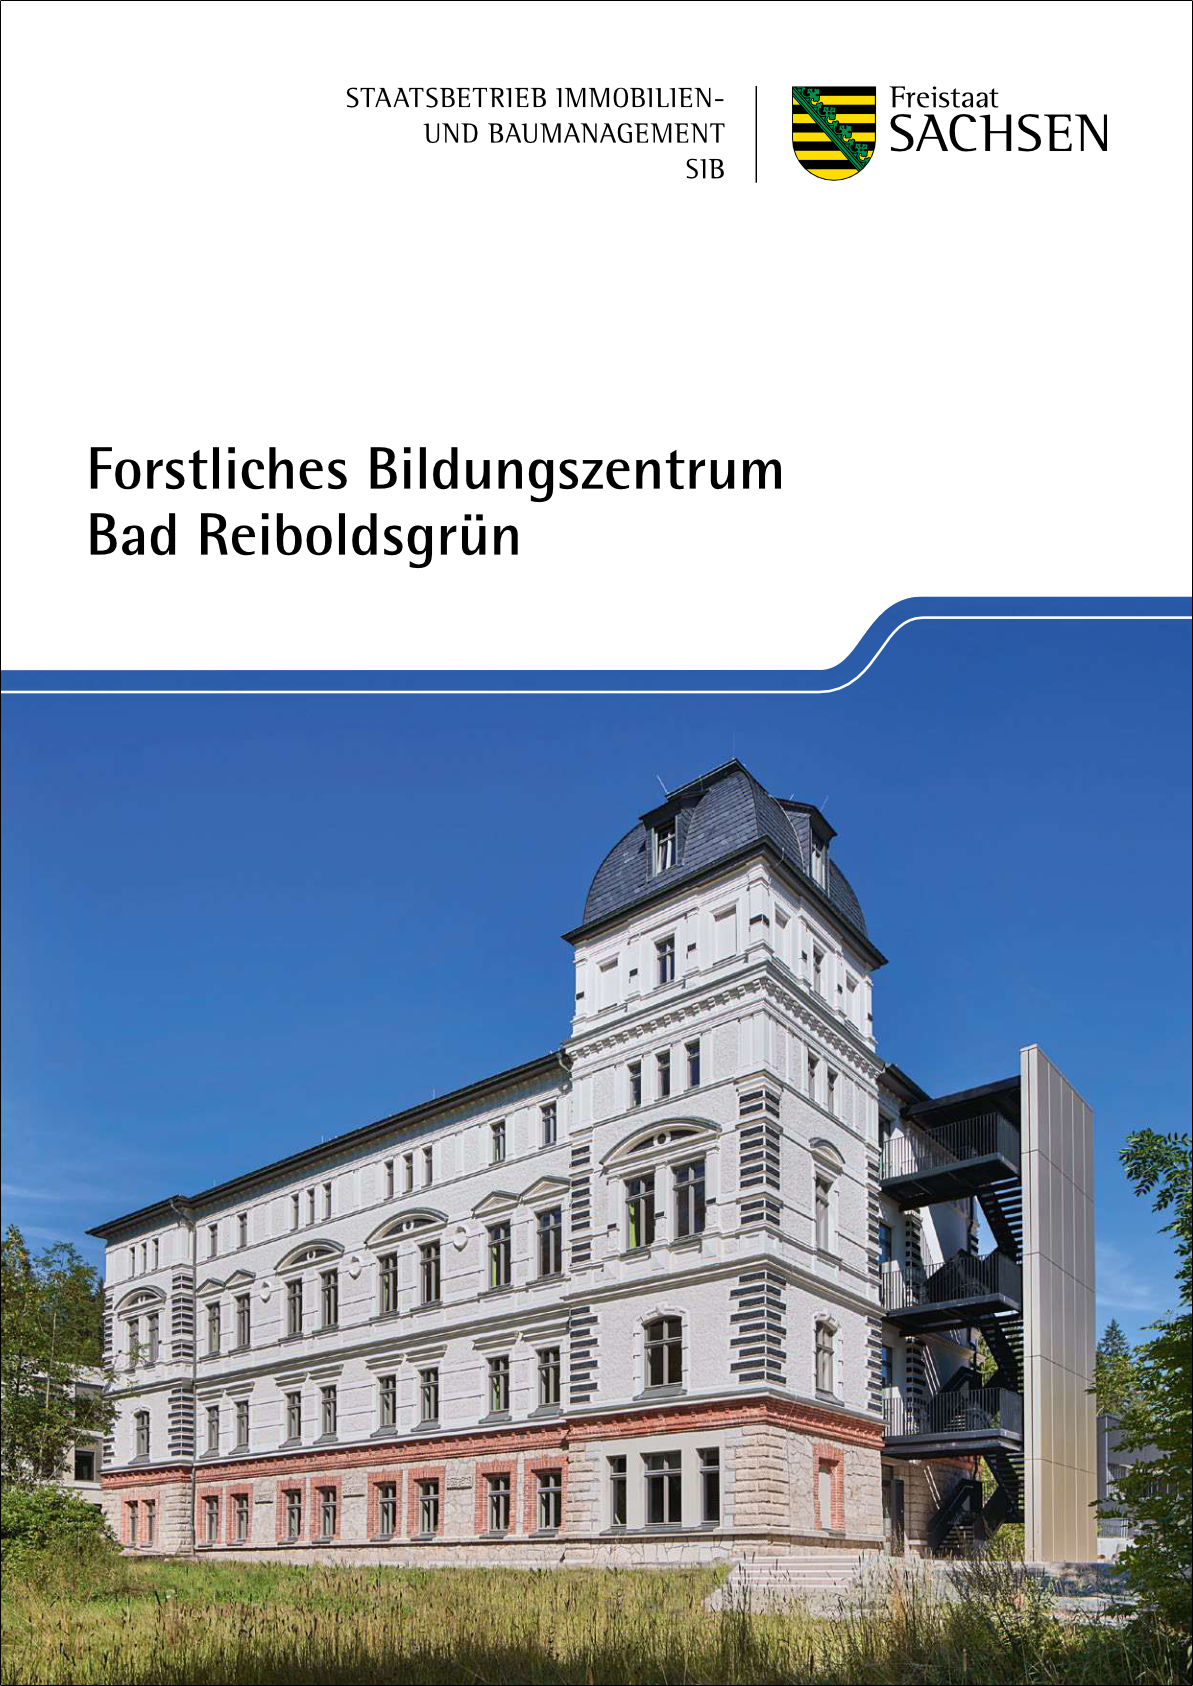 Coverseite des Faltblattes zum Forstlichen Bildungszentrum Bad Reibholdsgrün. Zu sehen ist das Verwaltungsgebäude mit weißer Fassade und schwarzem Dach.